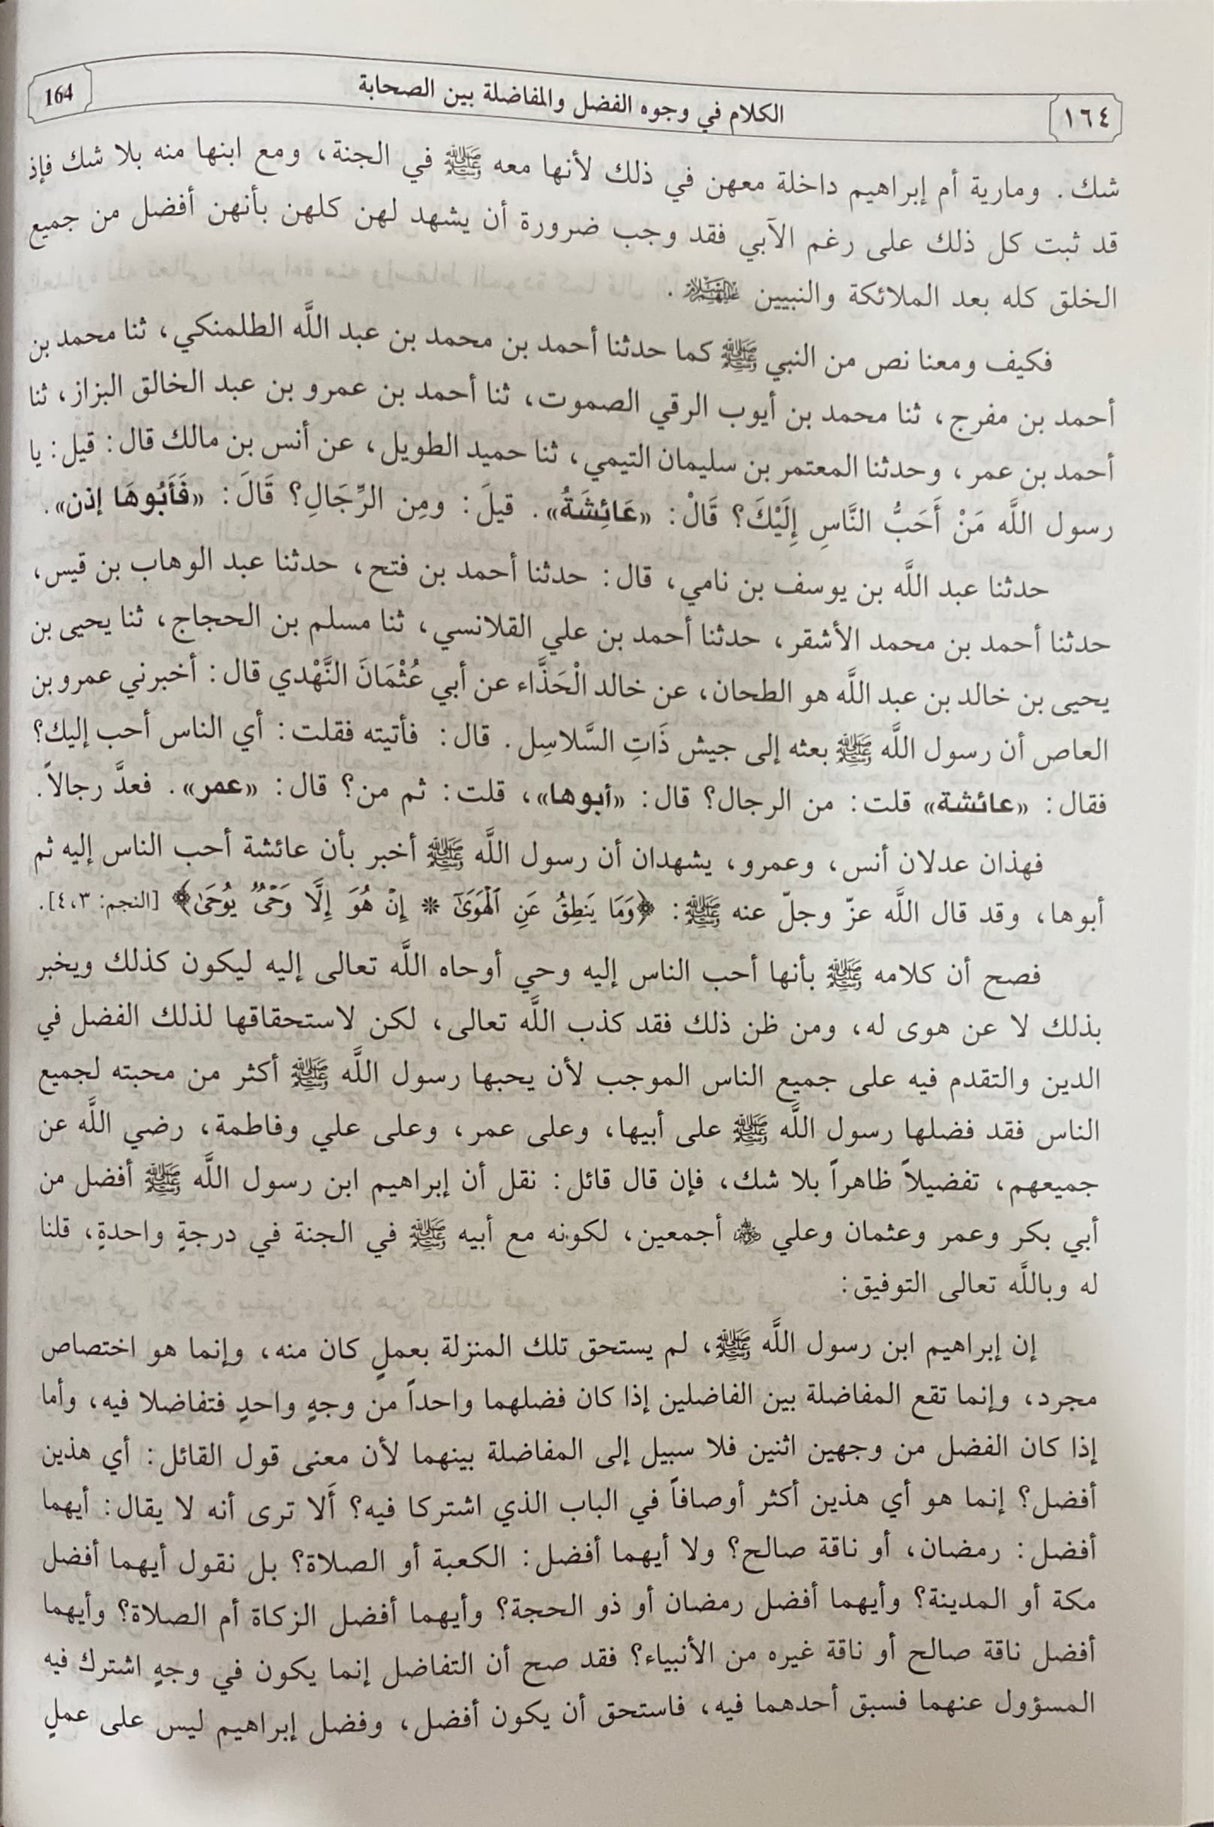 الفصل في الملل و الاهواء و النحل     Al Fasl Fil Milal Wal Ahwa Wan Nihal (2 Volume Set)